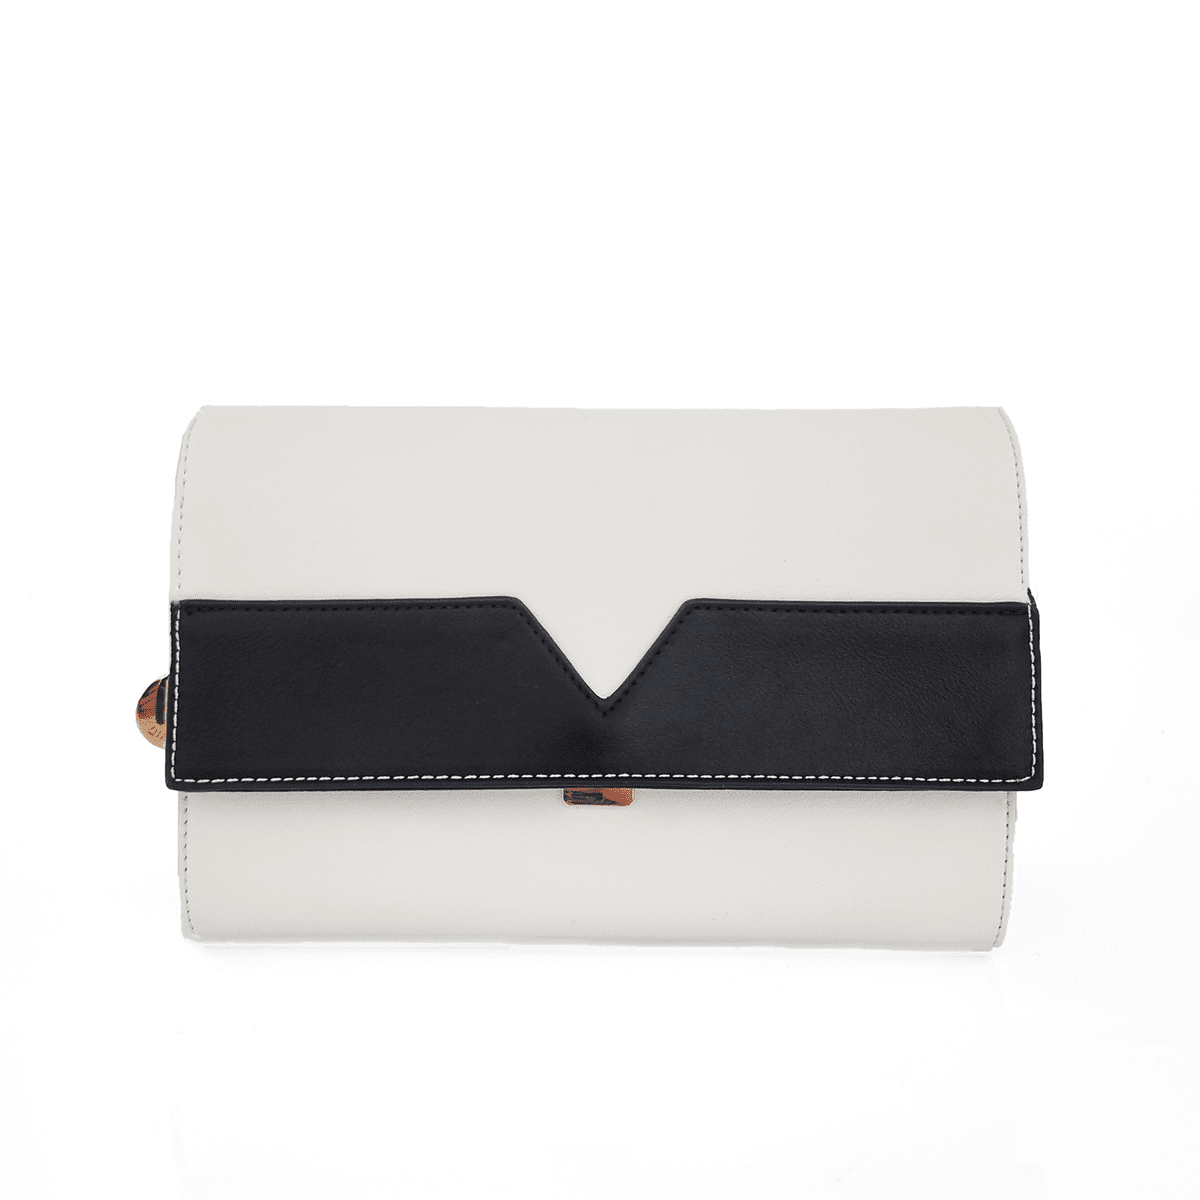 Diana & Co - Луксозна дамска чанта - бяла/черна